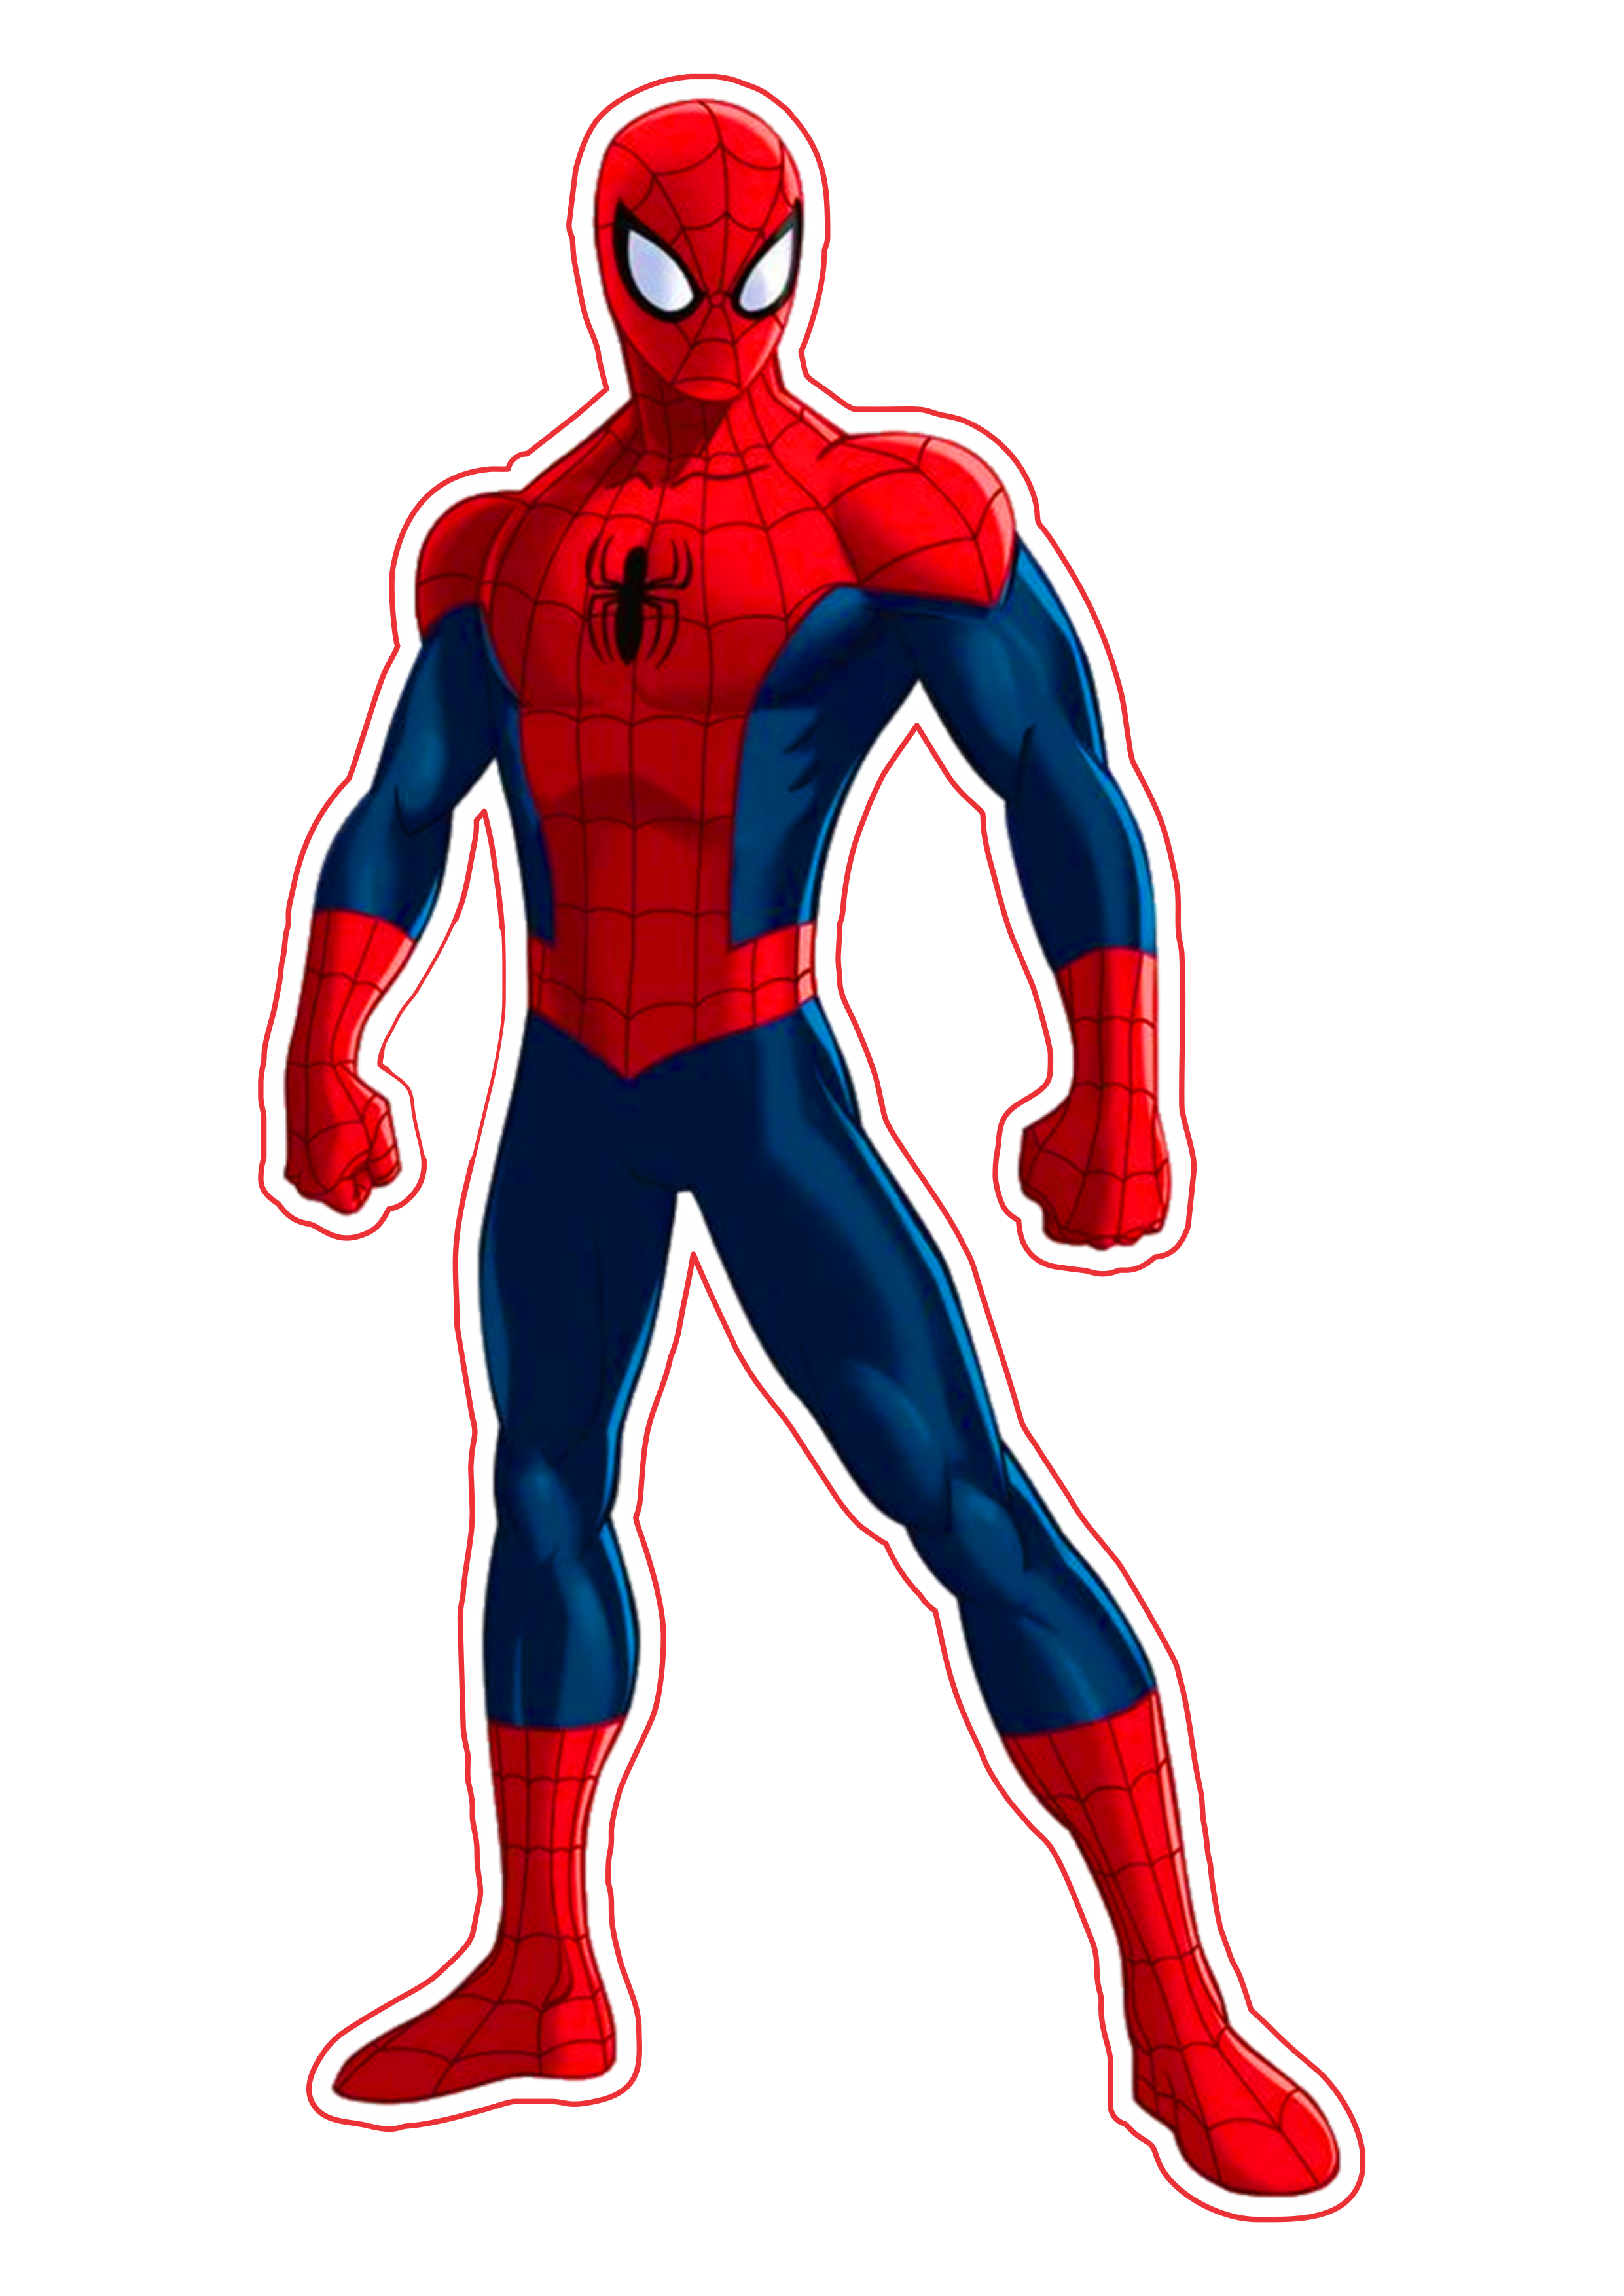 The amazing spider man fundo transparente homem aranha png